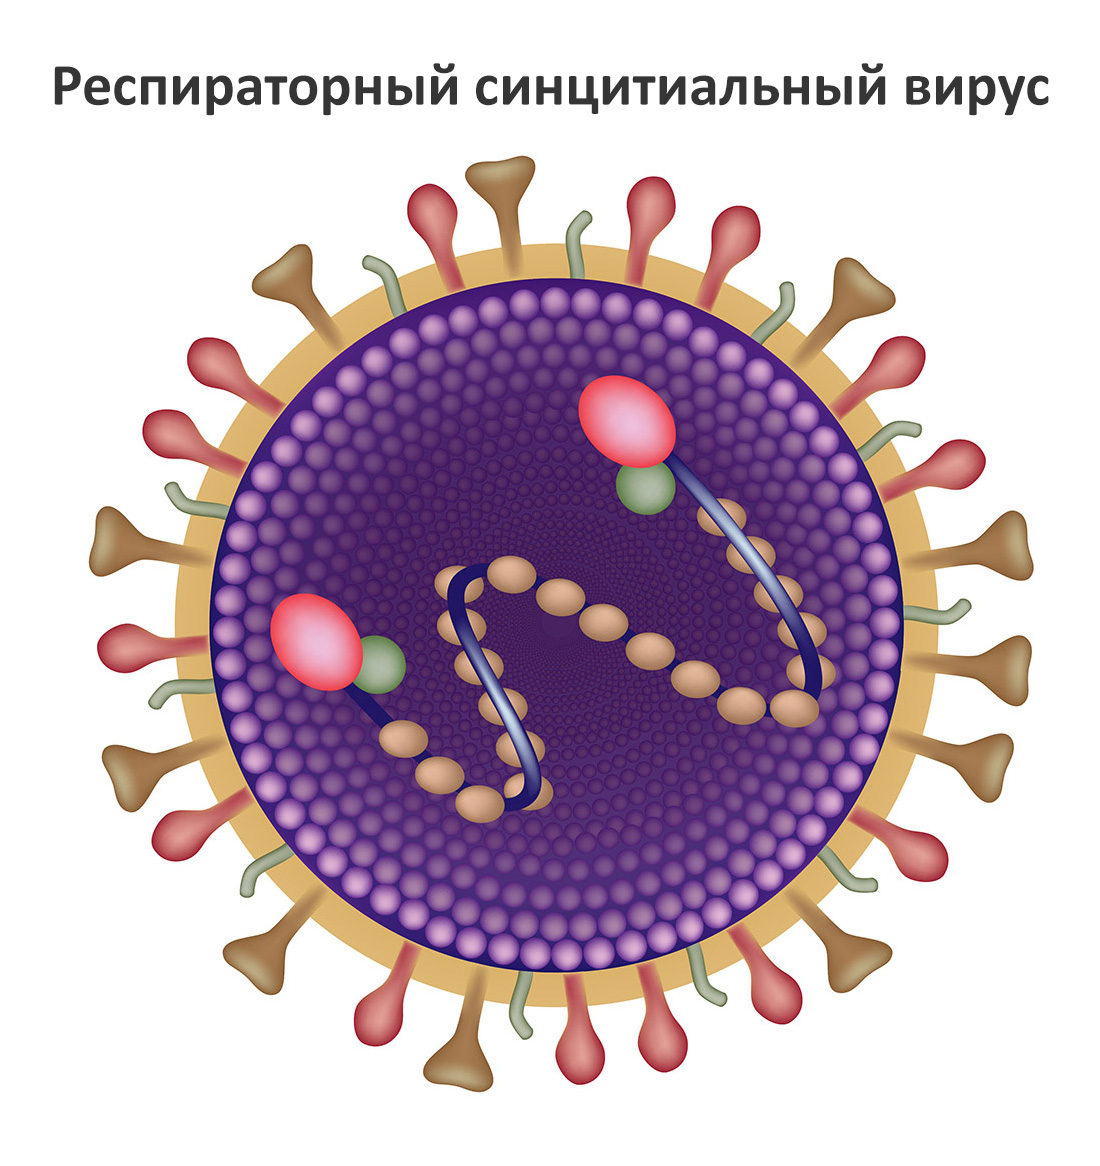 Респираторные синцитиальные вирусы